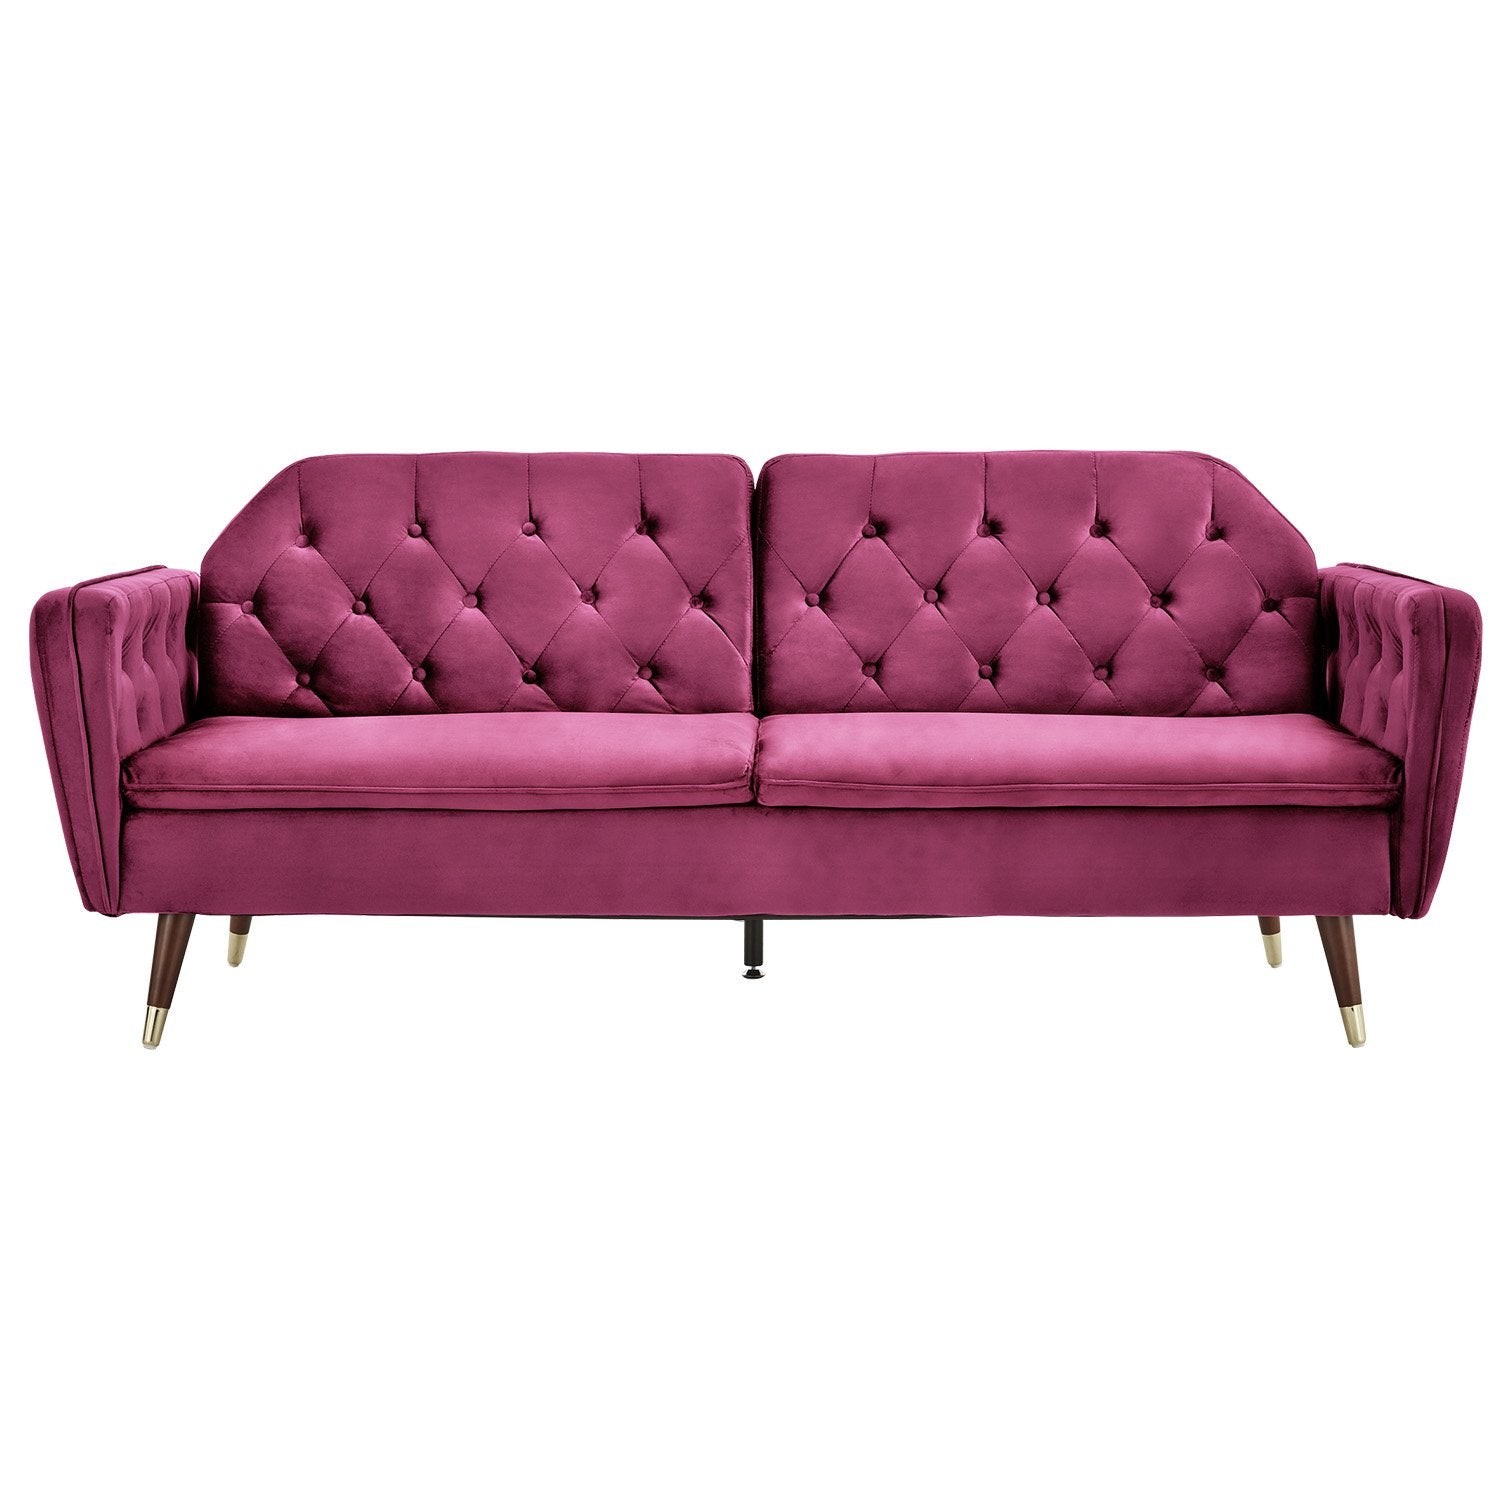 Sarantino Velvet Tufted Sofa Bed | Burgundy